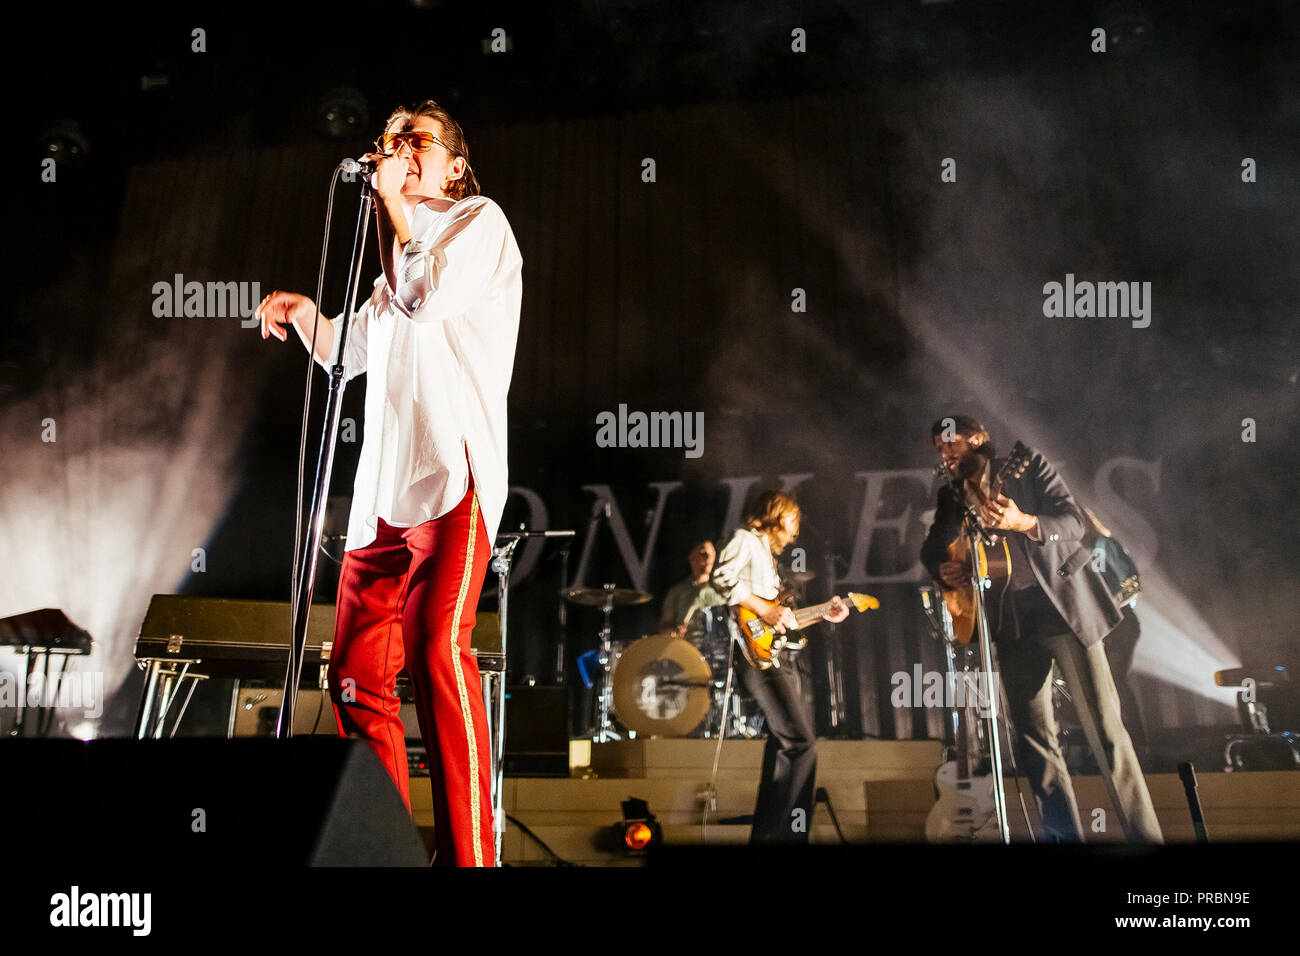 Dinamarca, Copenhague - Junio 27, 2018. La banda de rock inglés Arctic  Monkeys realiza un concierto en vivo en el escenario real en Copenhague.  Aquí el cantante, compositor y músico Alex Turner